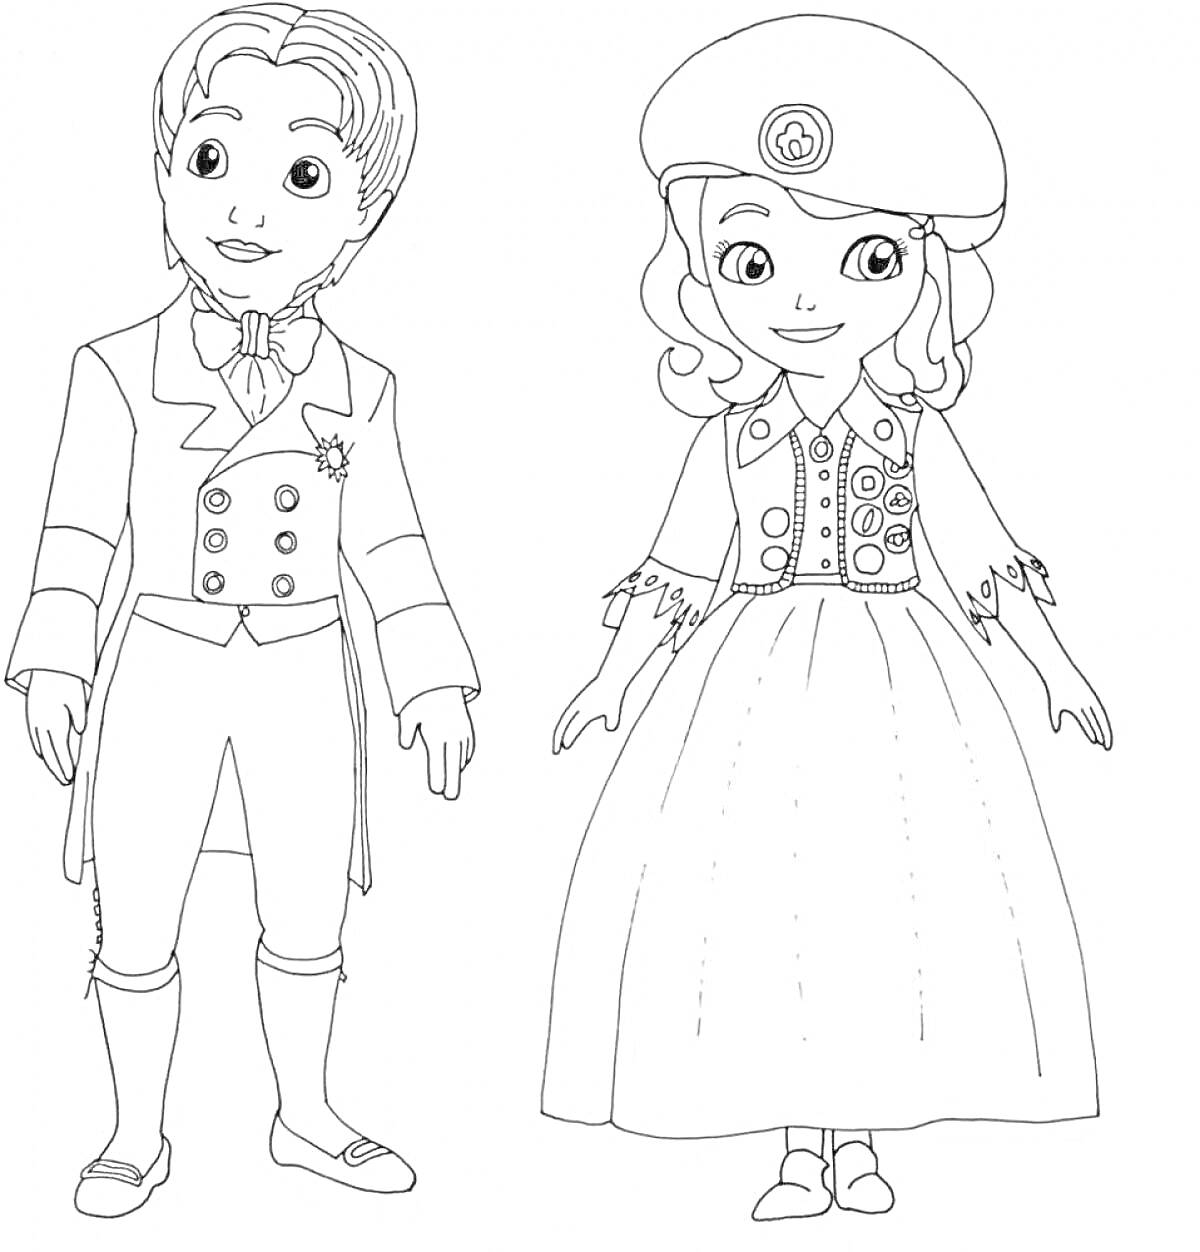 Раскраска два персонажа в винтажных костюмах, мальчик в пиджаке и брюках с бабочкой и пуговицами, девочка в платье и беретке